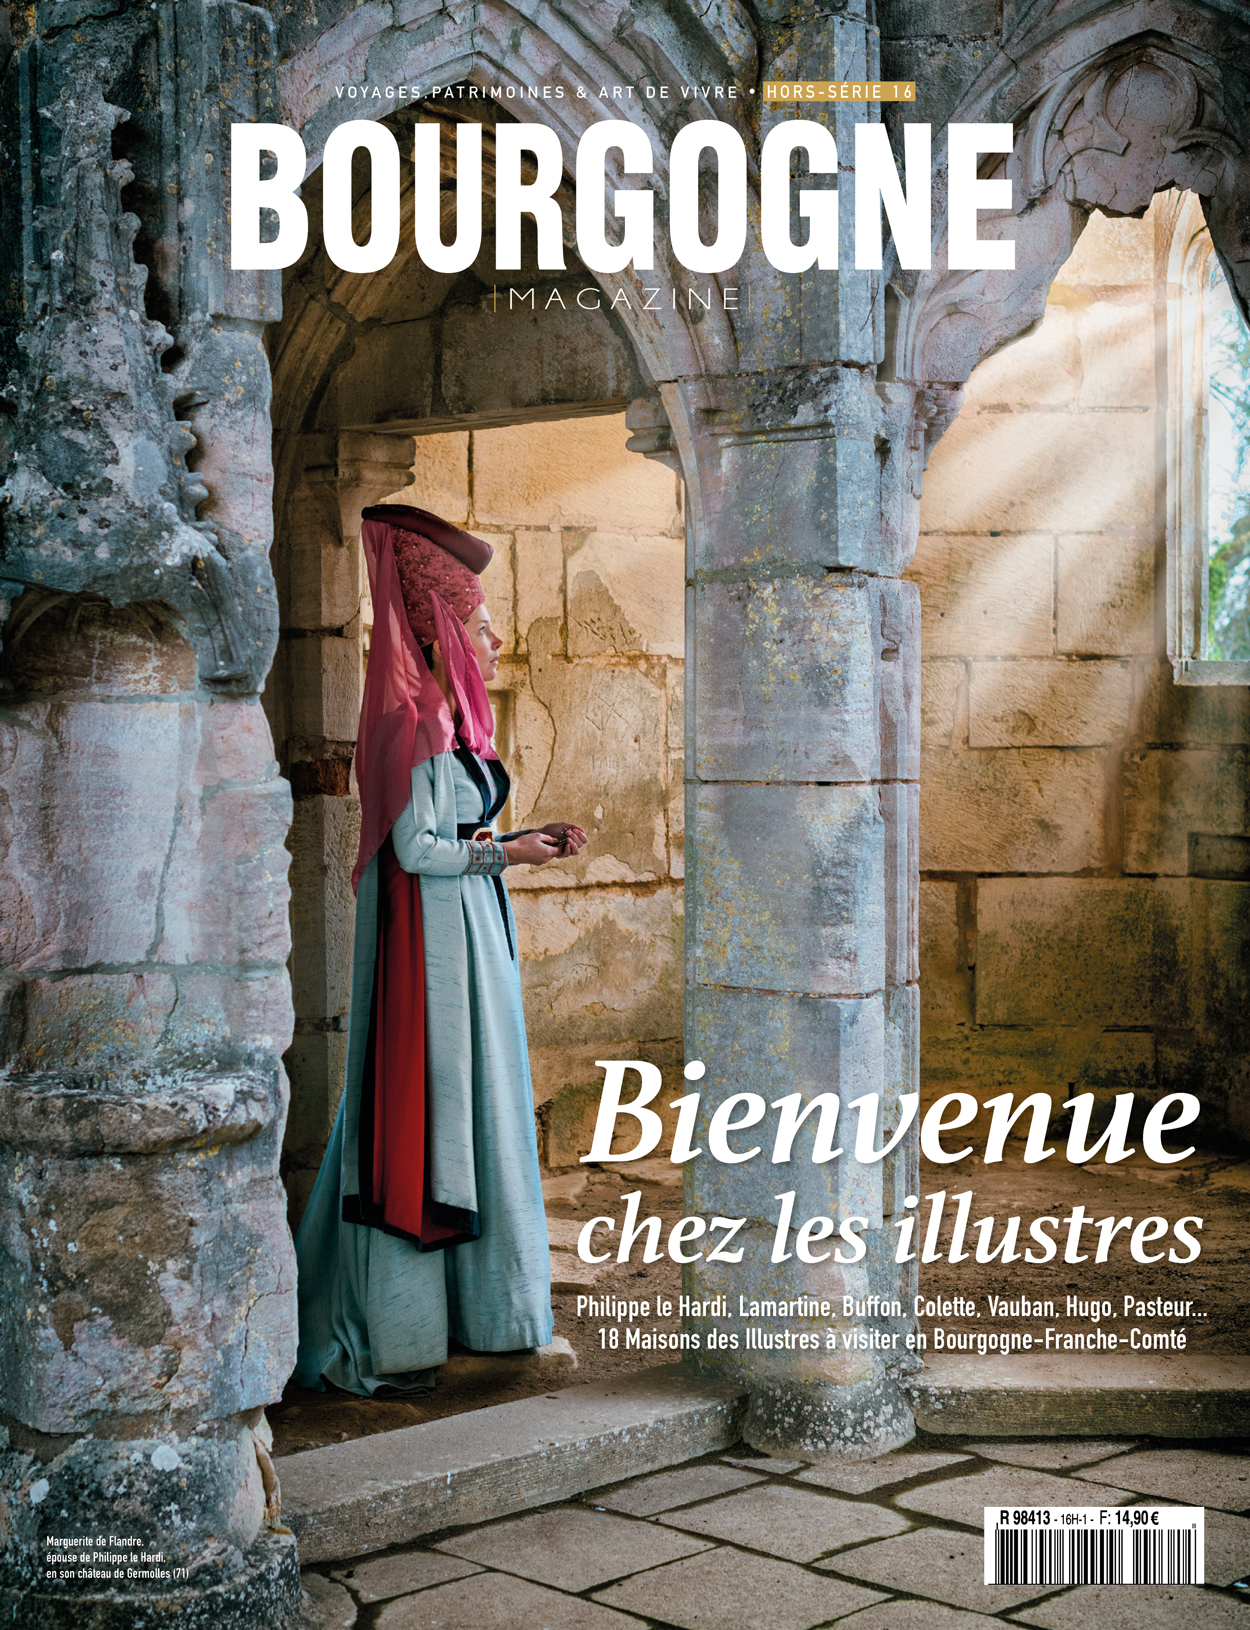 Marguerite de Flandre, Lamartine, Buffon, Colette, Hugo… Bourgogne Magazine fait revivre les Illustres